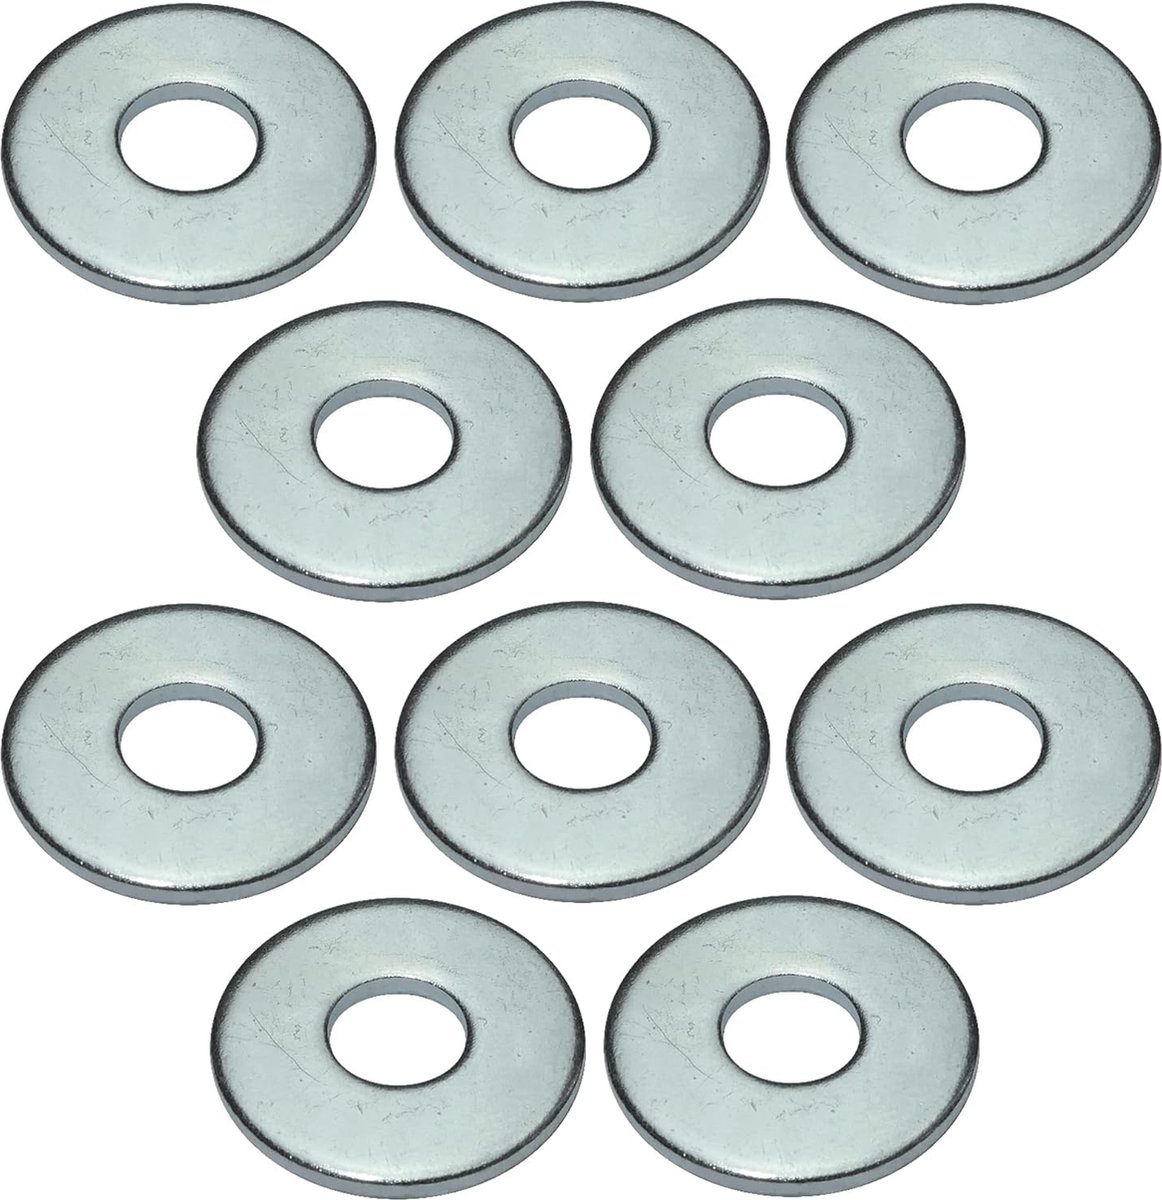 Set de 10 grosses rondelles - M6 / Ø18mm - en acier galvanisé - DIN  9021-140HV - pour